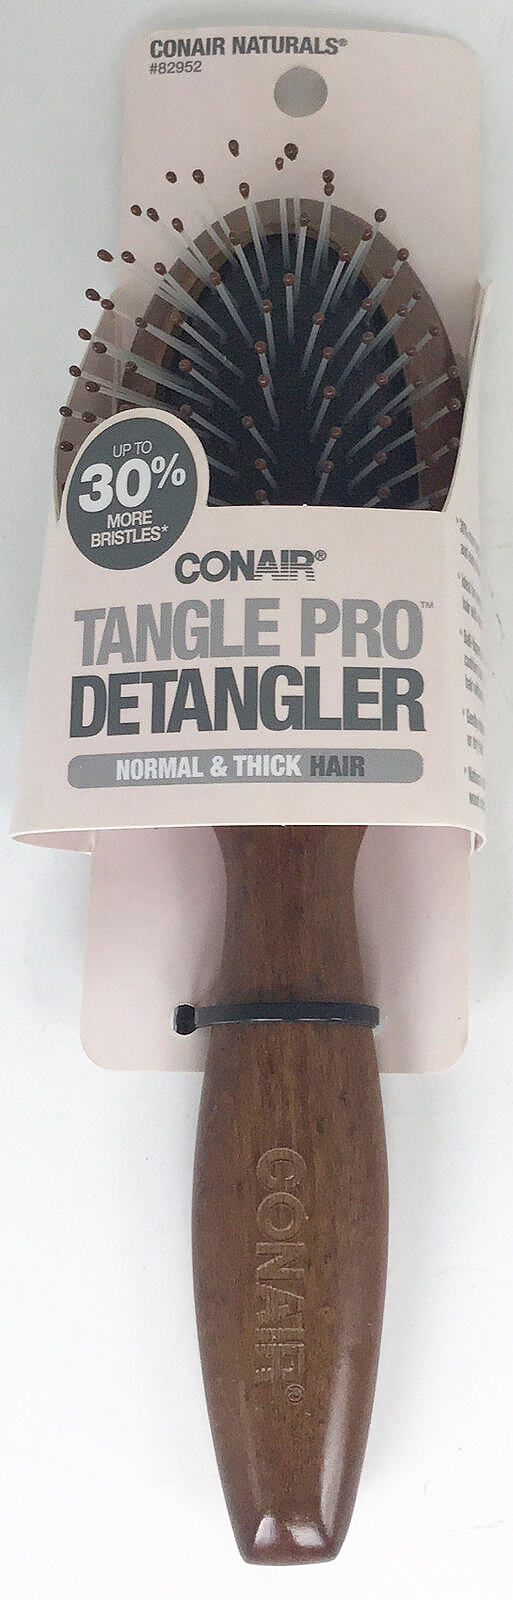 Conair Naturals Tangle Pro Detangler Oval Hair Brush